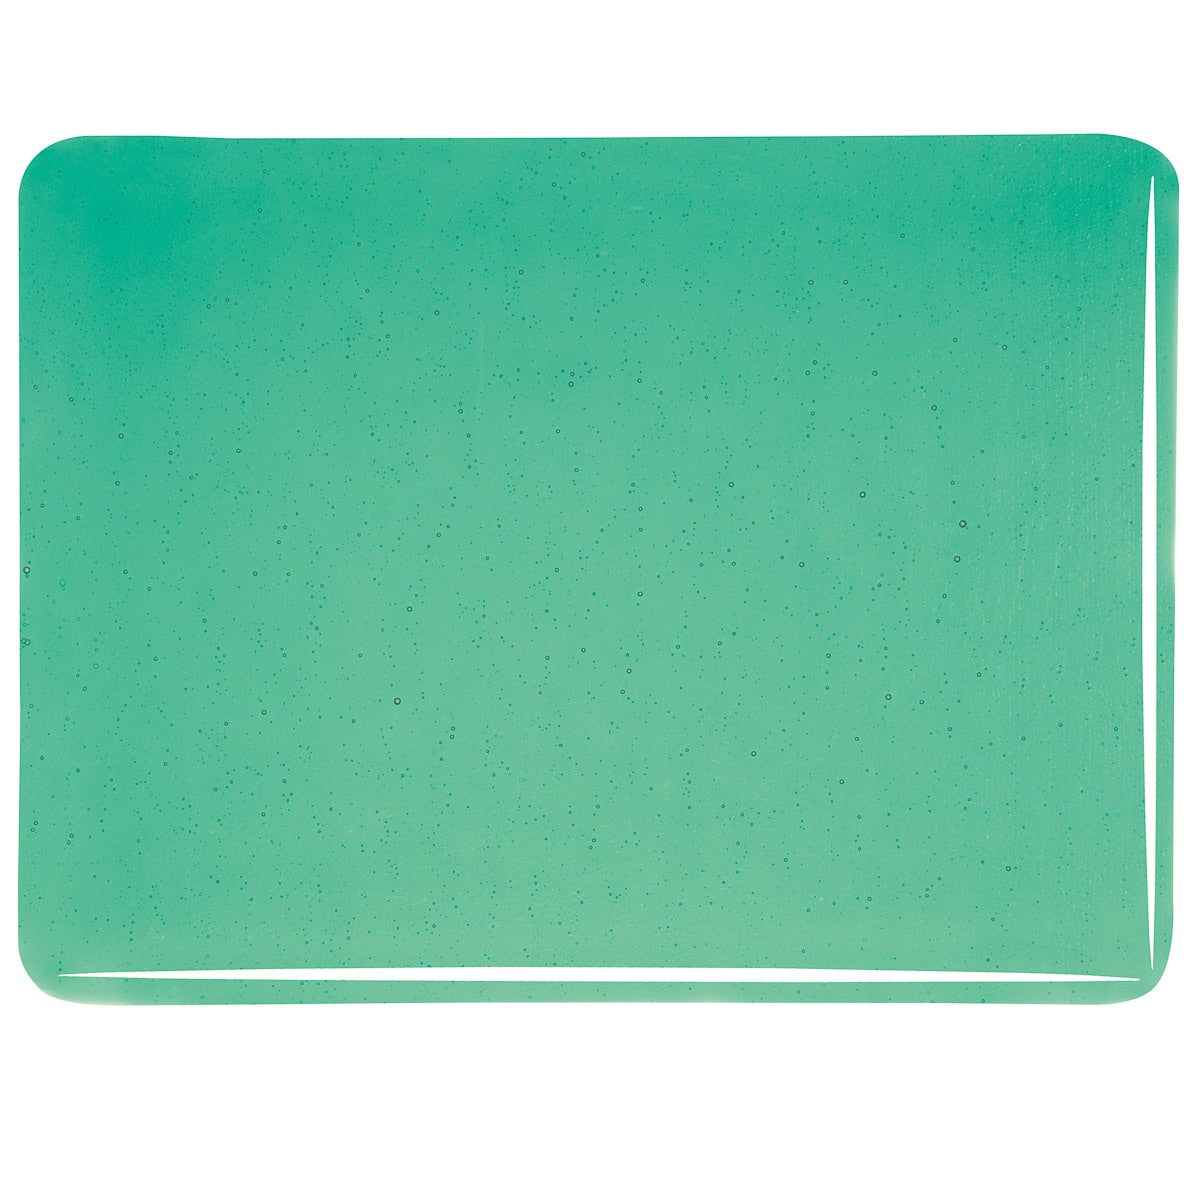 001417 Transparent Emerald Green sheet glass swatch